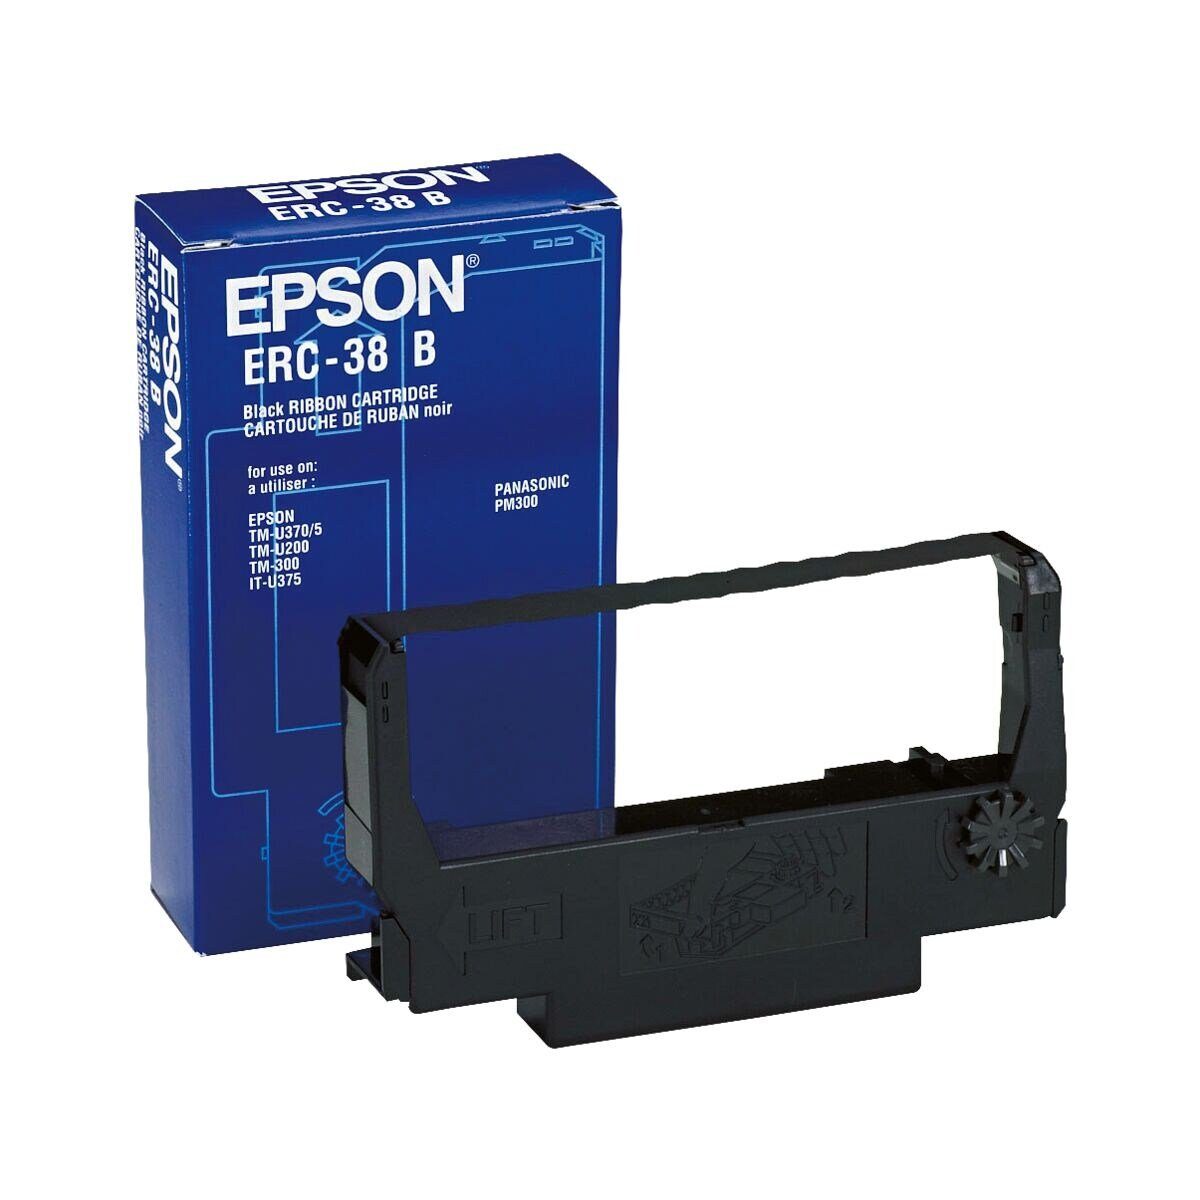 Epson Druckerband ERC-38B, für Kassensysteme, schwarz